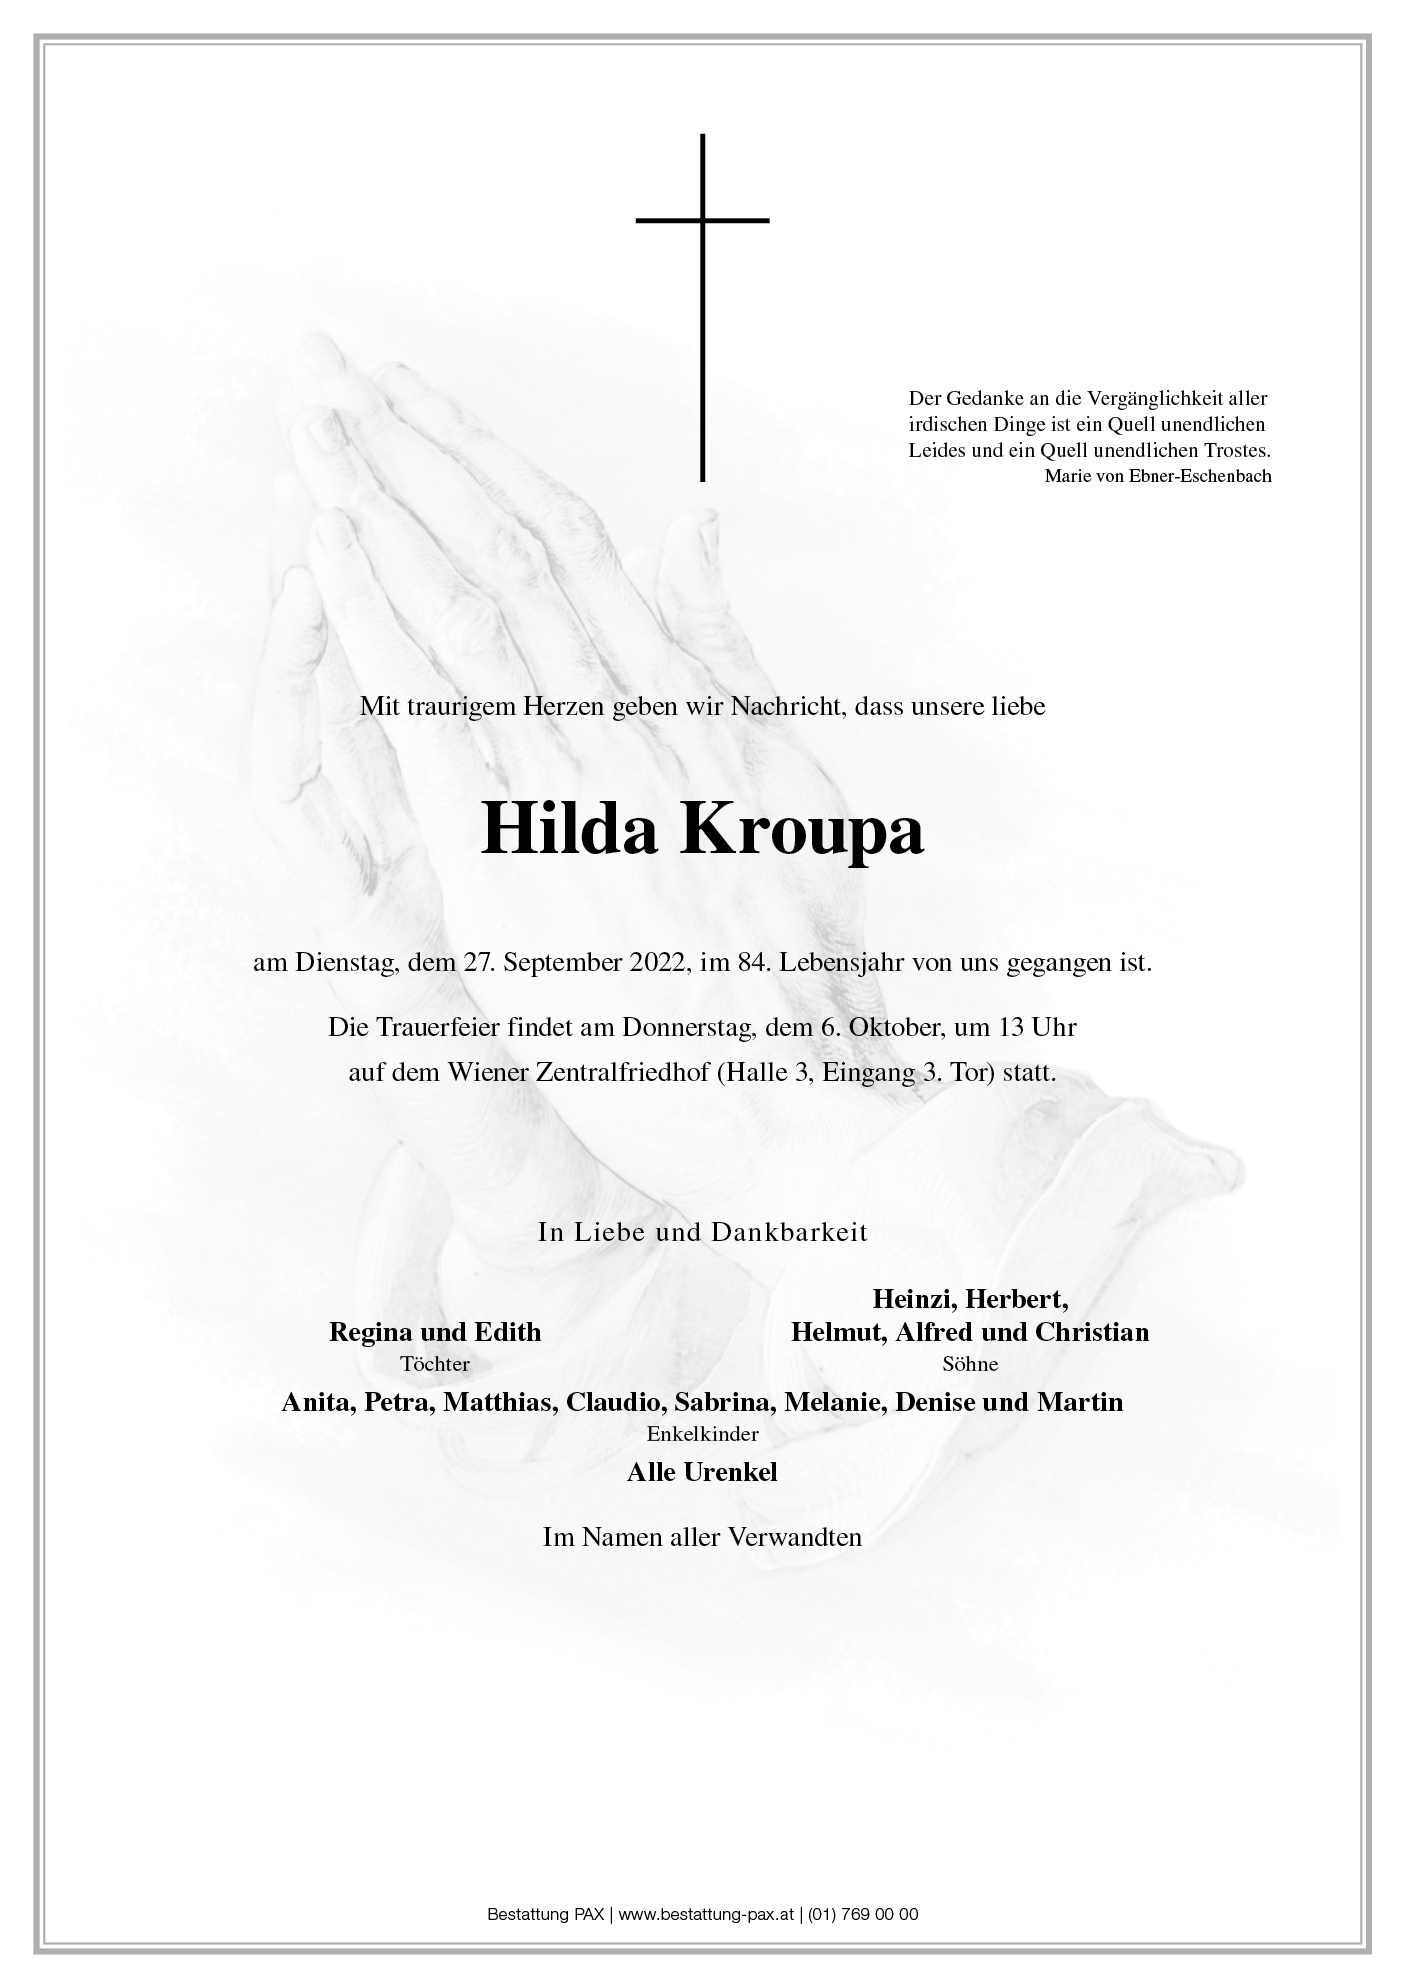 Hilda Kroupa